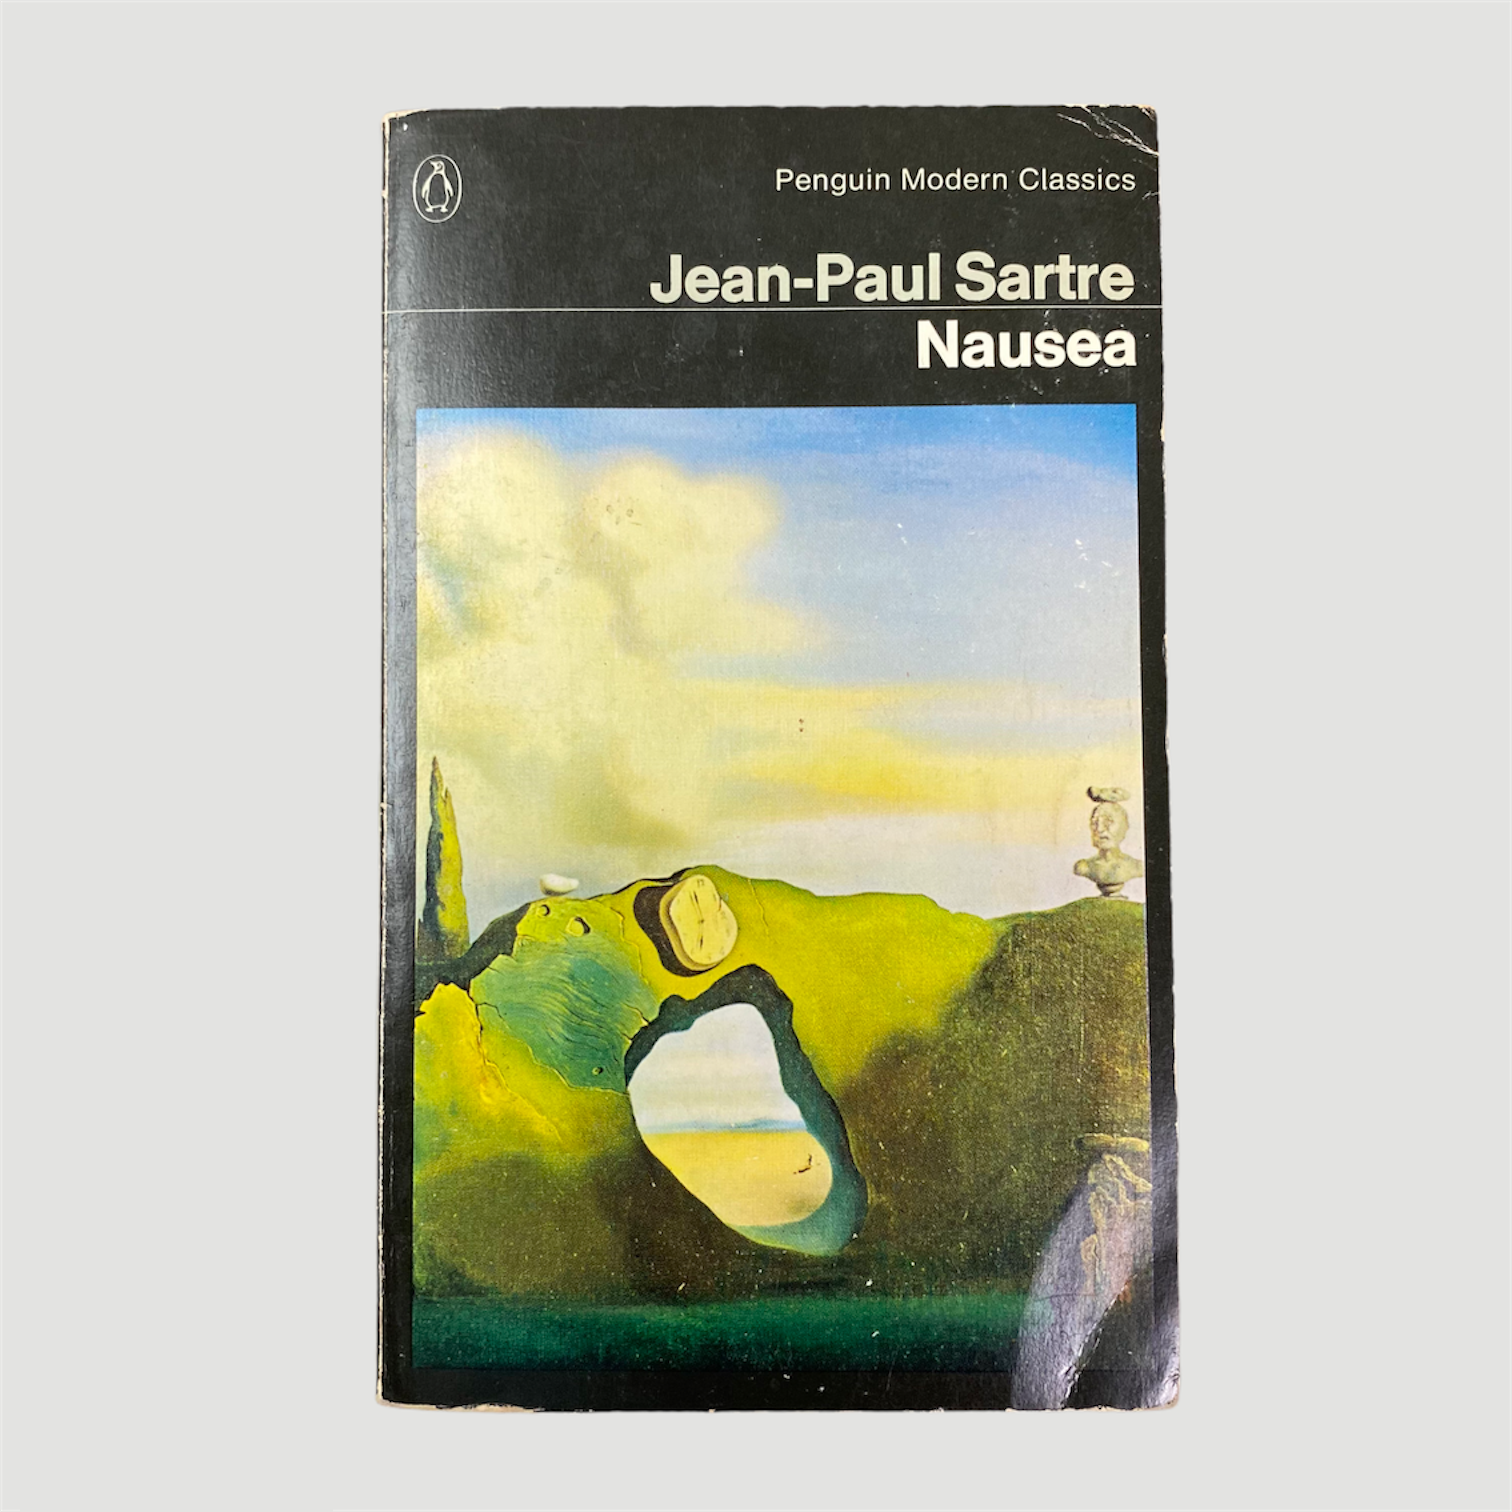 La nausea - JEAN PAUL SARTRE: 9786071417602 - AbeBooks